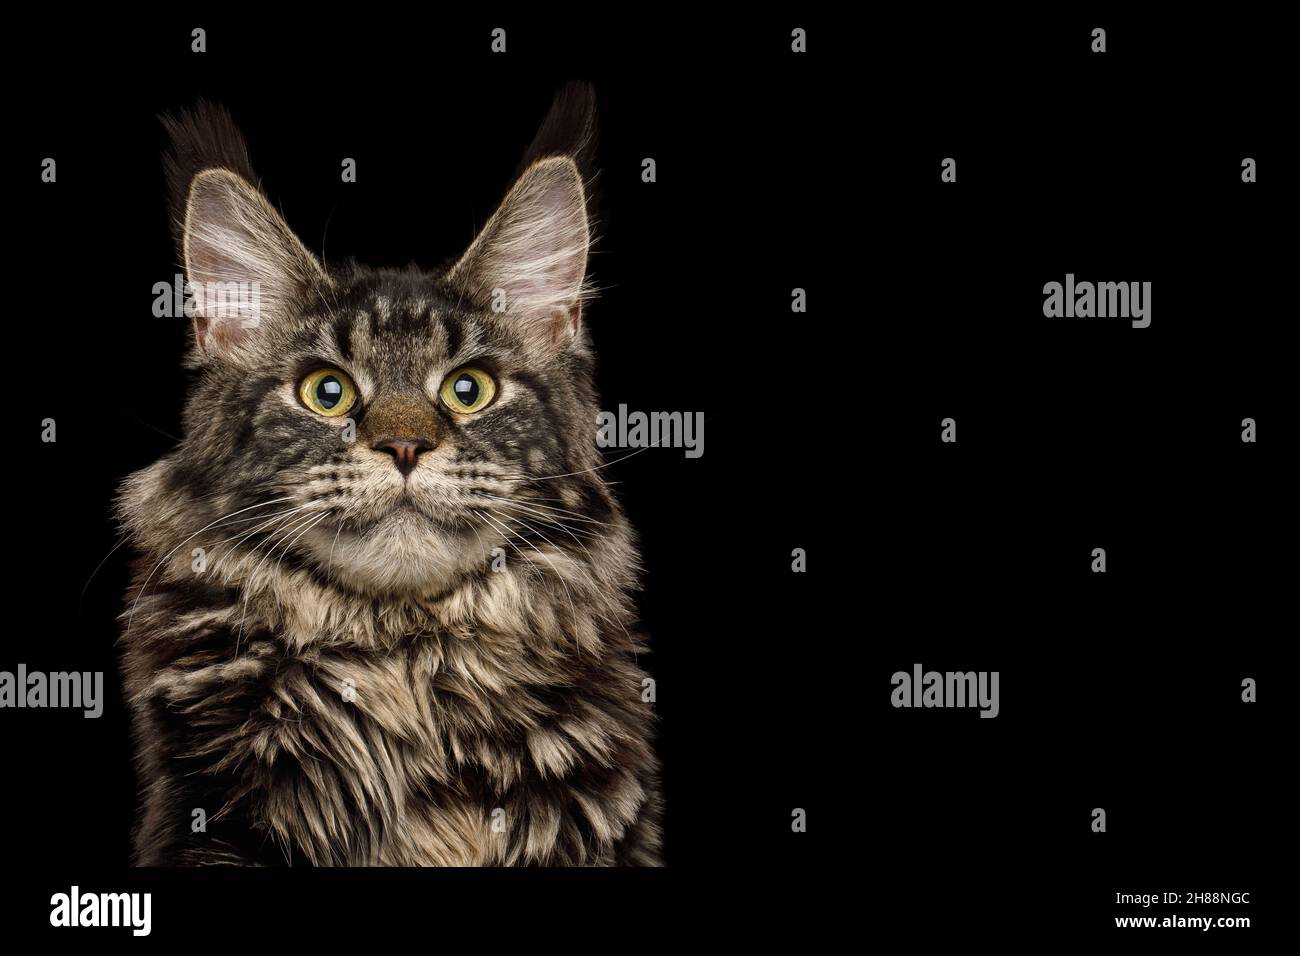 Retrato de un enorme gato montés de maine con cepillo en las orejas, observando el fondo negro aislado Foto de stock